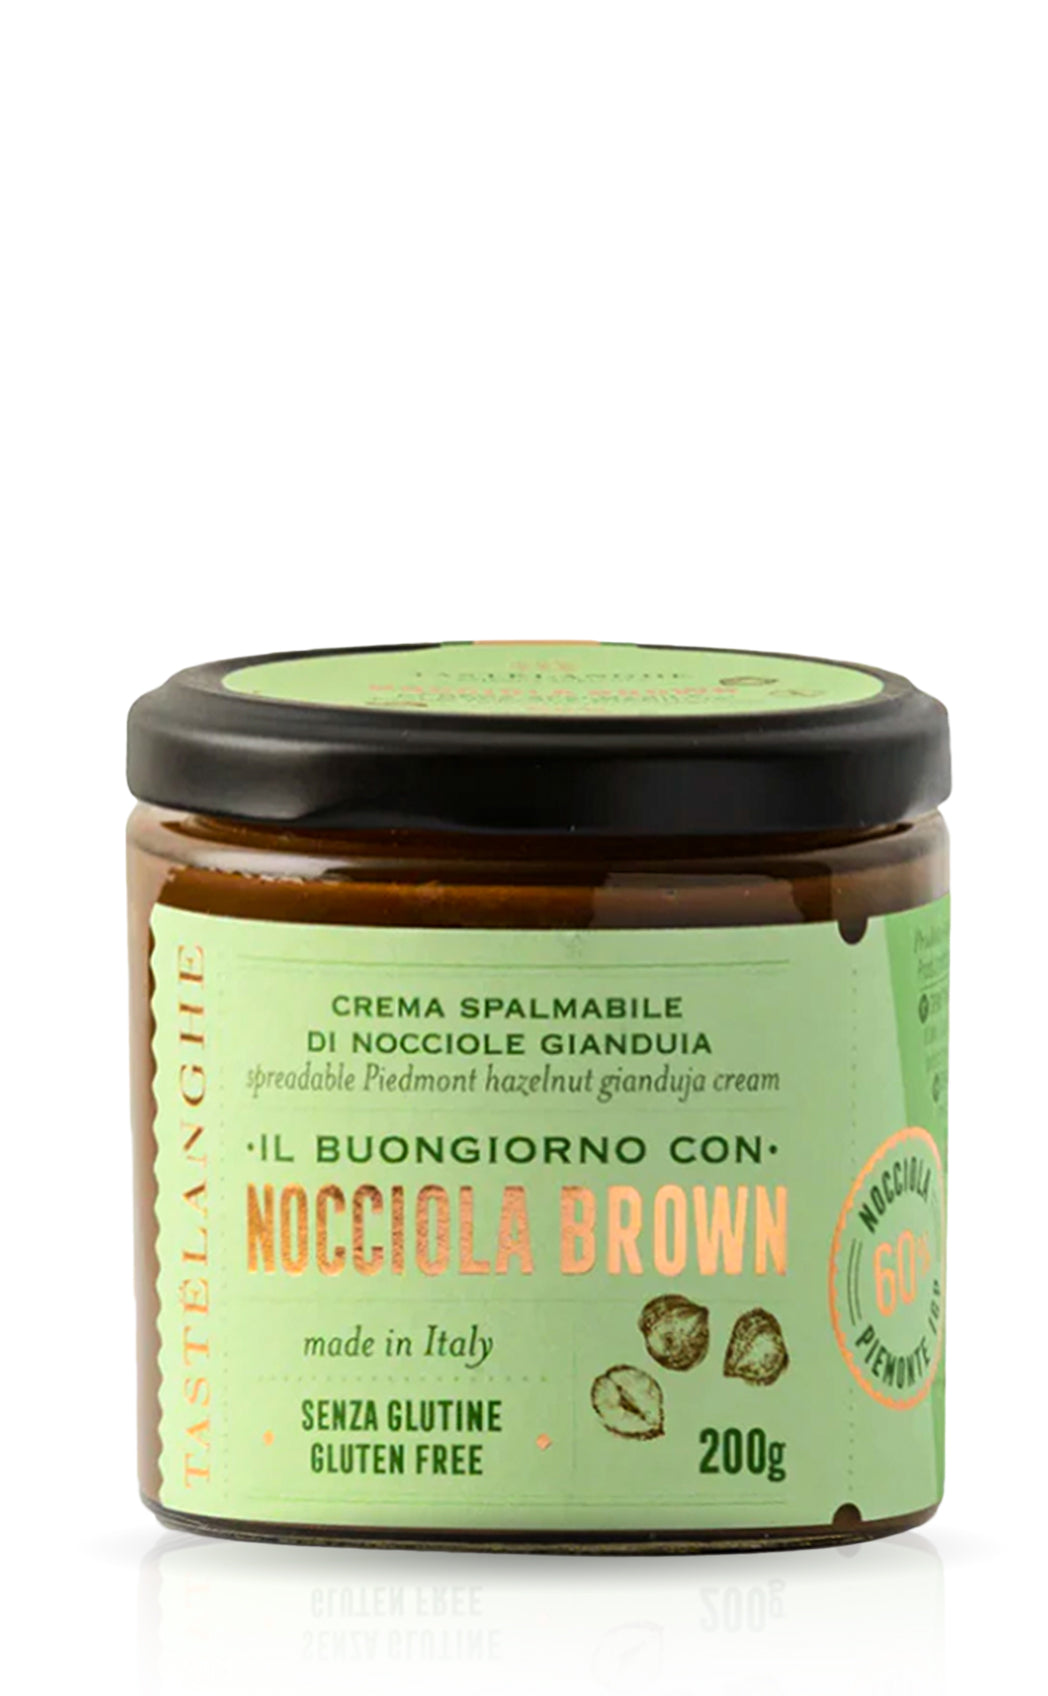 Haselnusscreme Gianduja Nougat aus Italien online kaufen ohne gluten, ohne palmöl